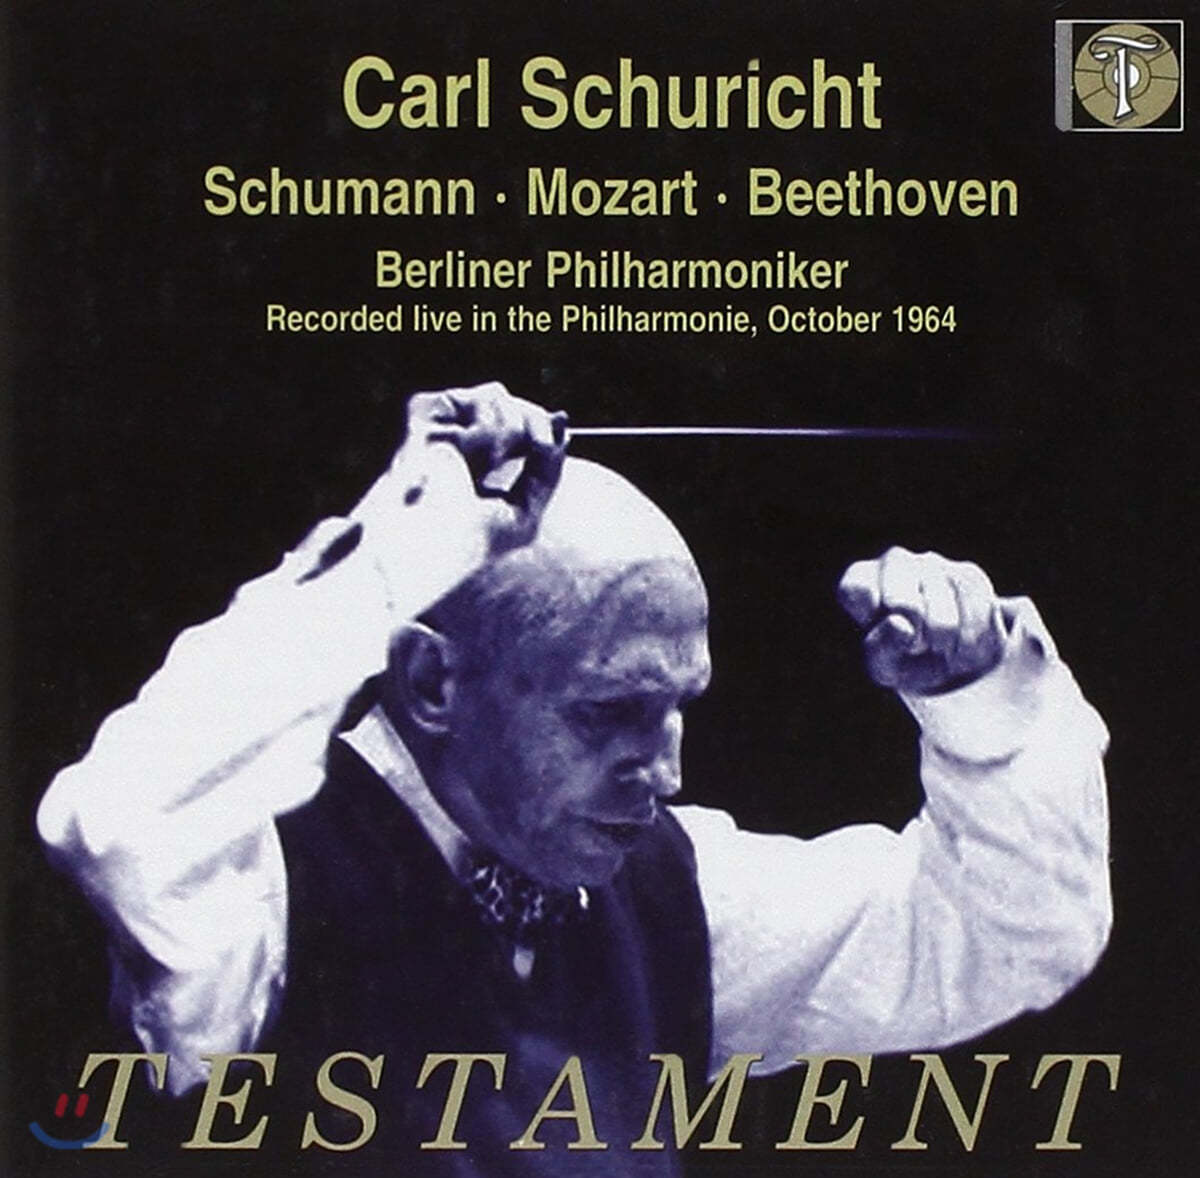 Carl Schuricht 슈만: 서곡 / 모차르트 / 베토벤: 교향곡 (Schumann: Overture Op.115 / Mozart: Symphony K.504 / Beethoven: Symphony Op.55 'Eroica') 